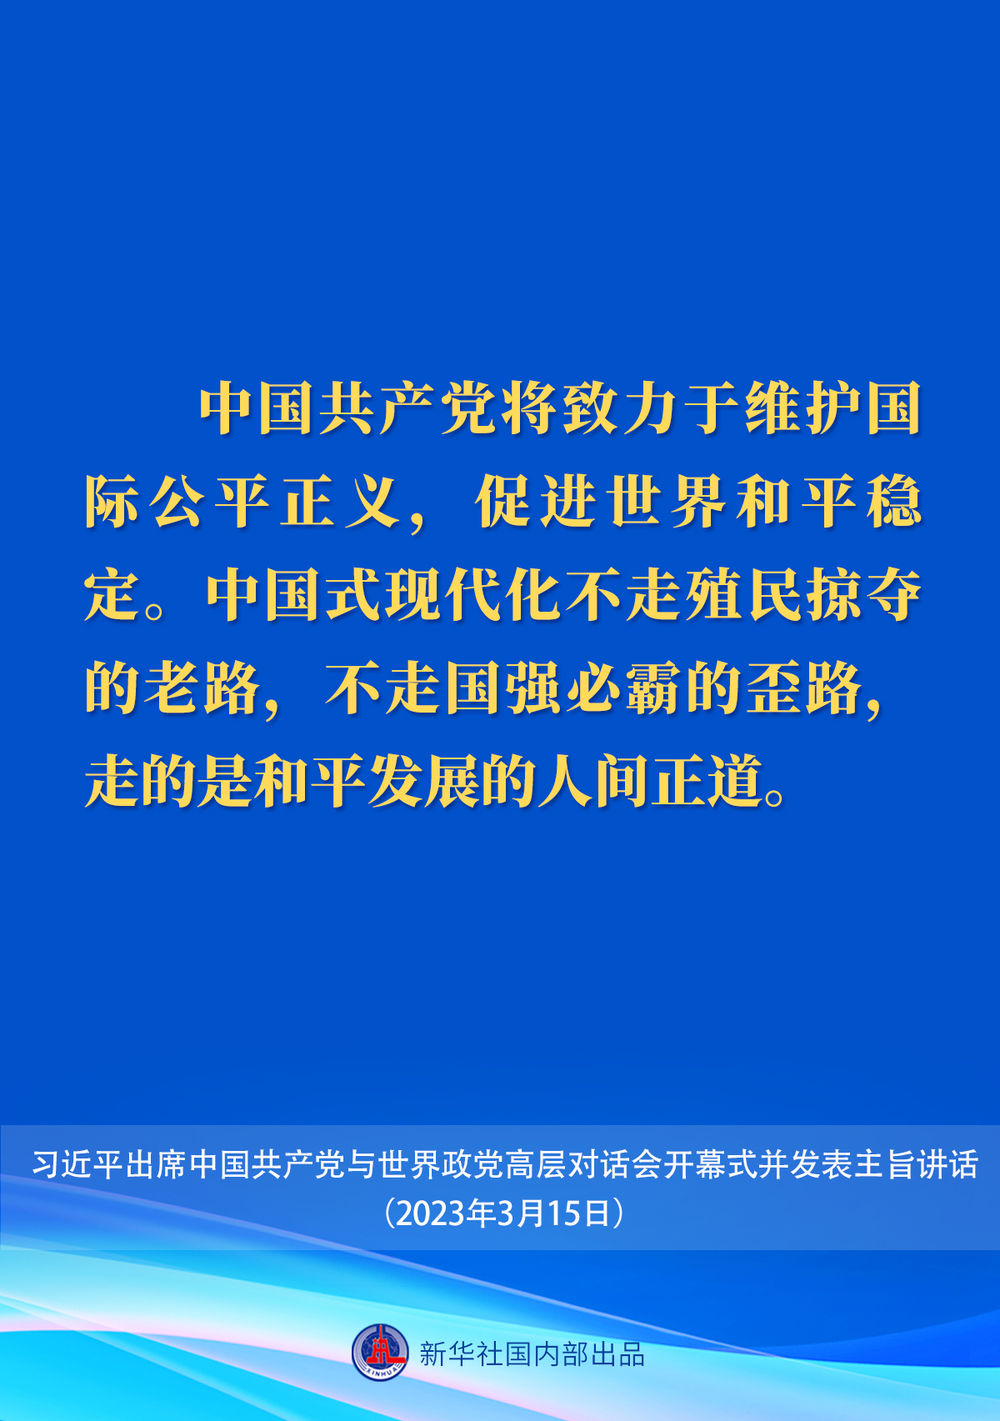 习近平在中国共产党与世界政党高层对话会上的主旨讲话要点6.jpeg